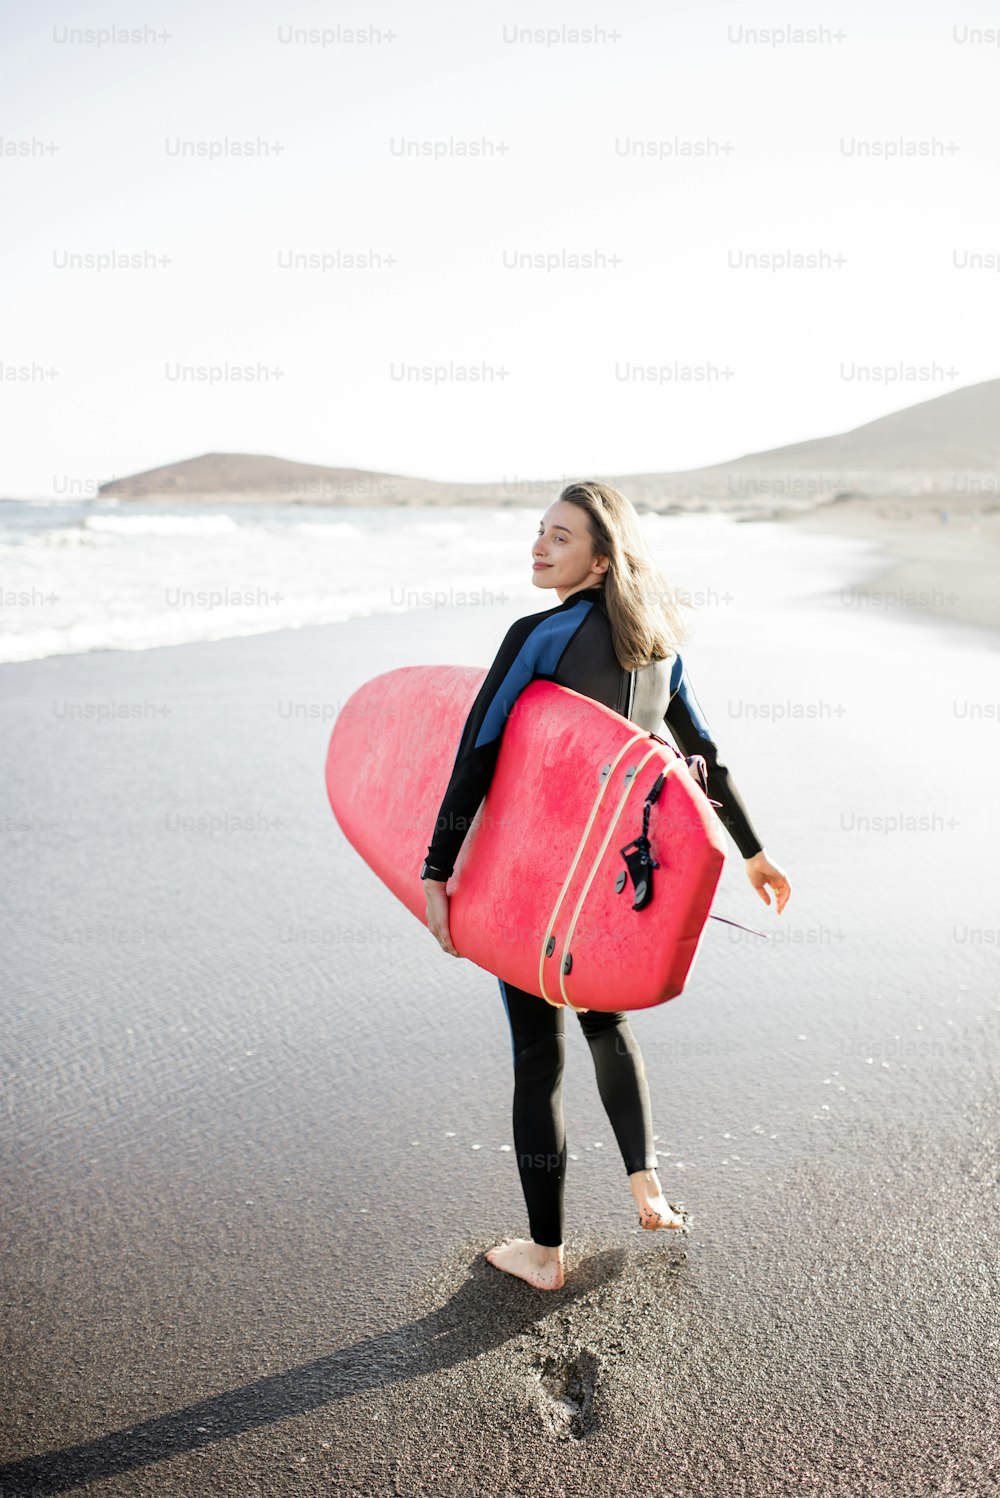 Giovane donna in muta che cammina con tavola da surf, lasciando impronte sulla sabbia dietro, vista dal retro. Sport acquatici e concetto di stile di vita attivo